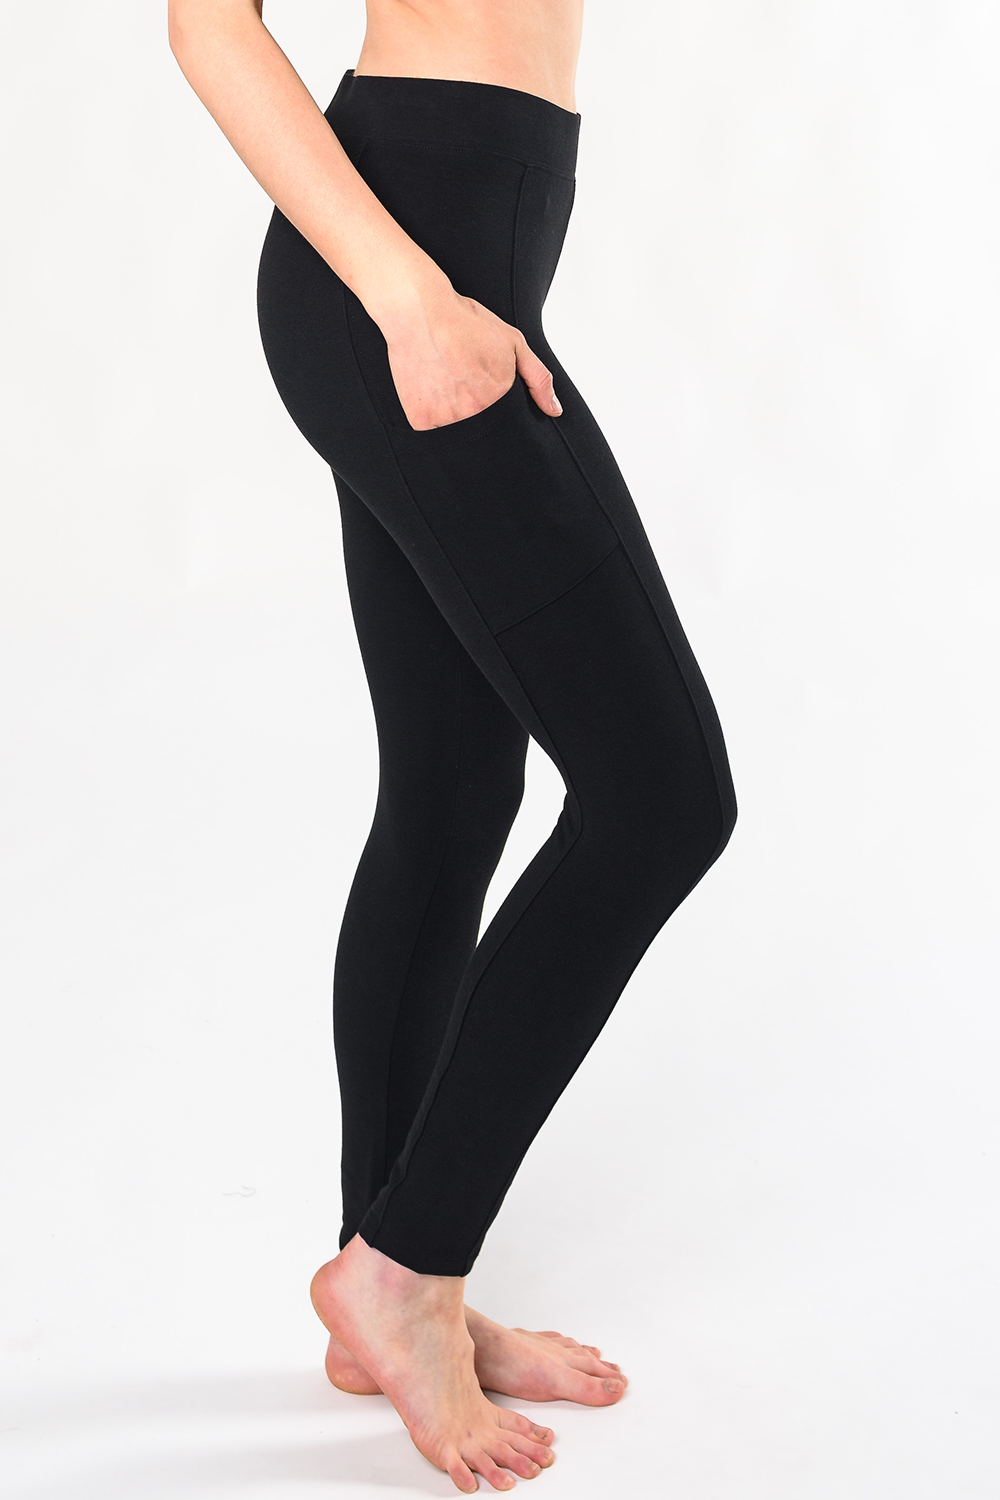 http://terrera.ca/cdn/shop/products/viva-pocket-leggings-black-side-pocket.png?v=1661368346